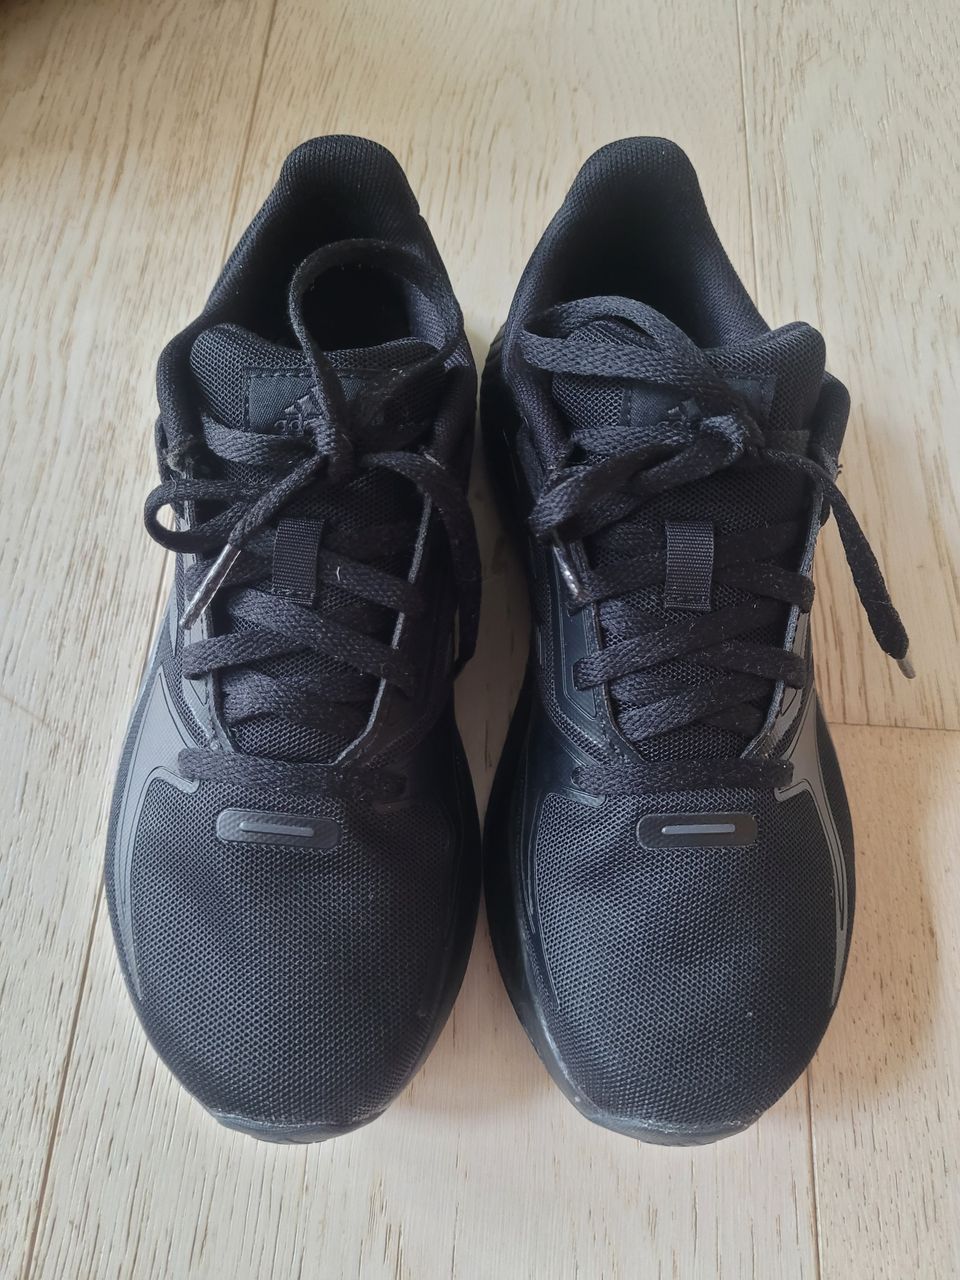 Adidas Runfalcon, uudet, koko 36